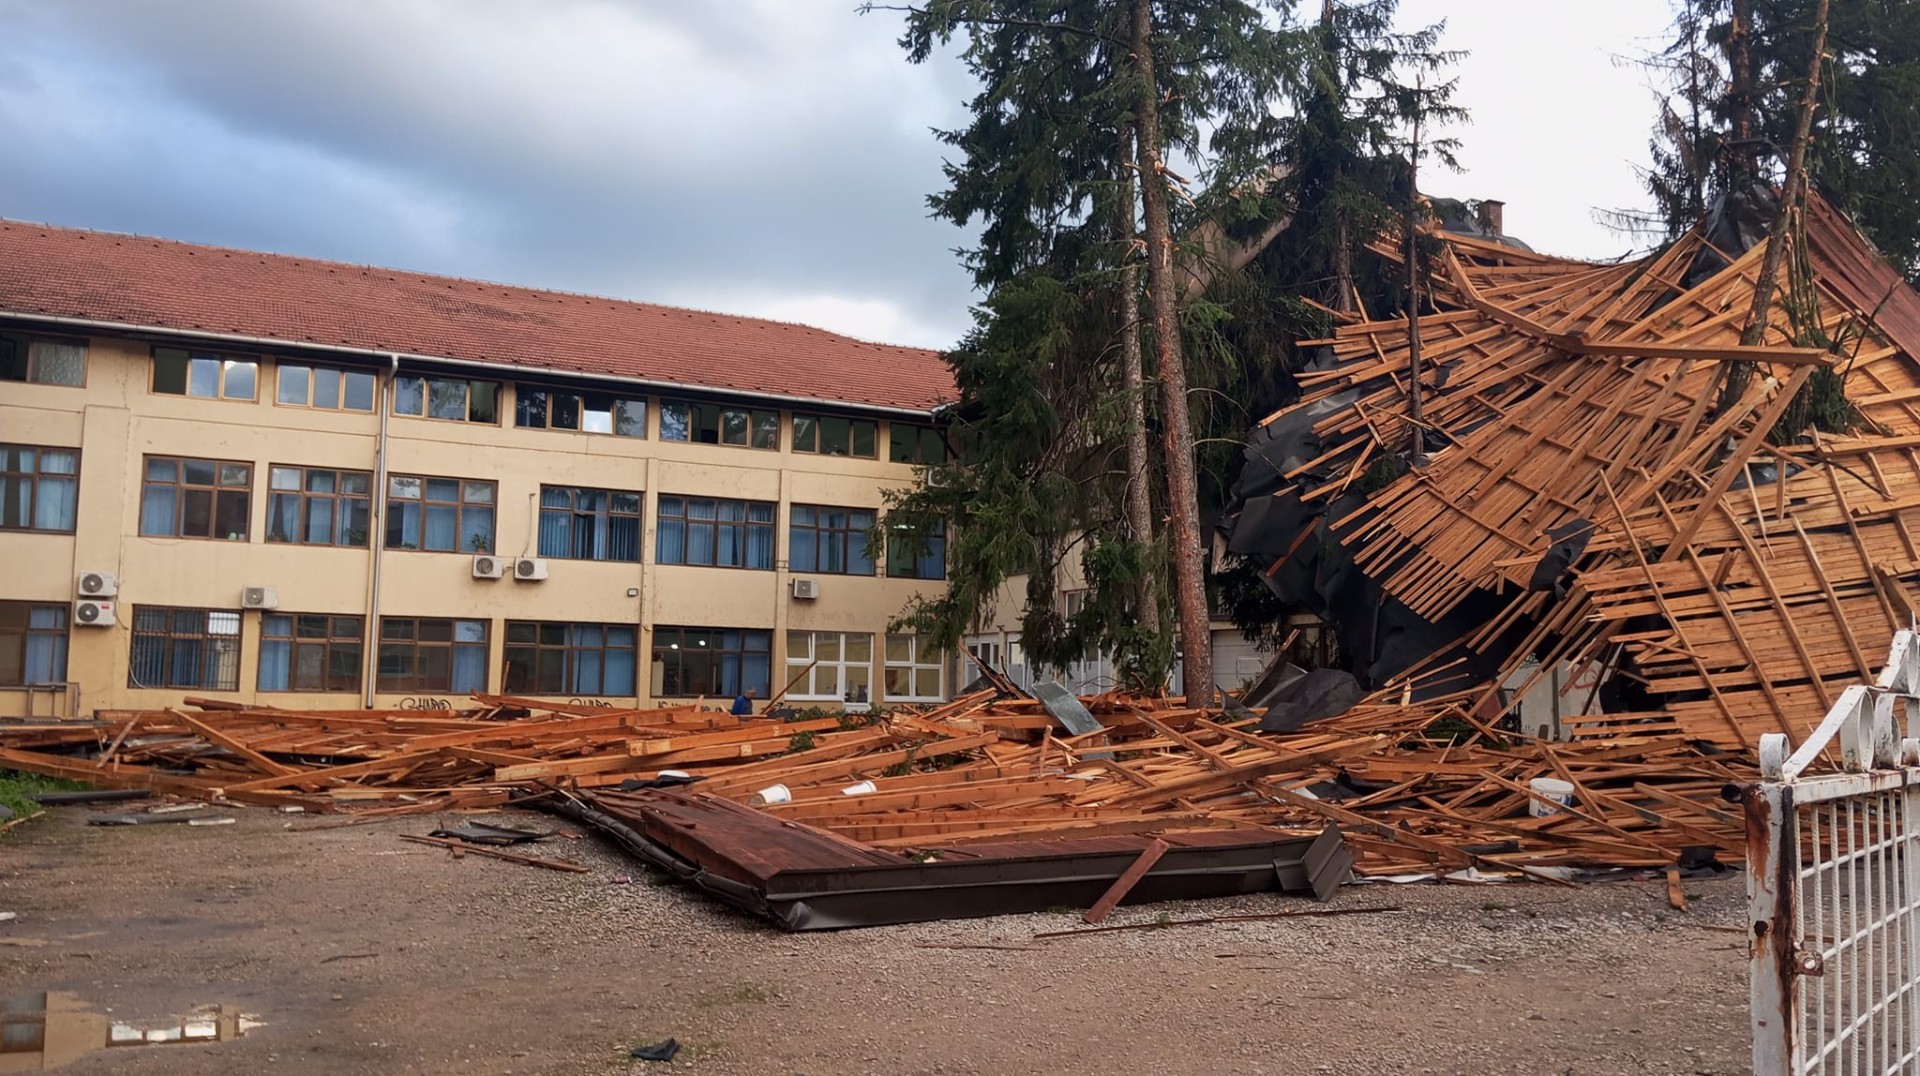 Olujni vjetar odnio krov sa gimnazije u Gračanici